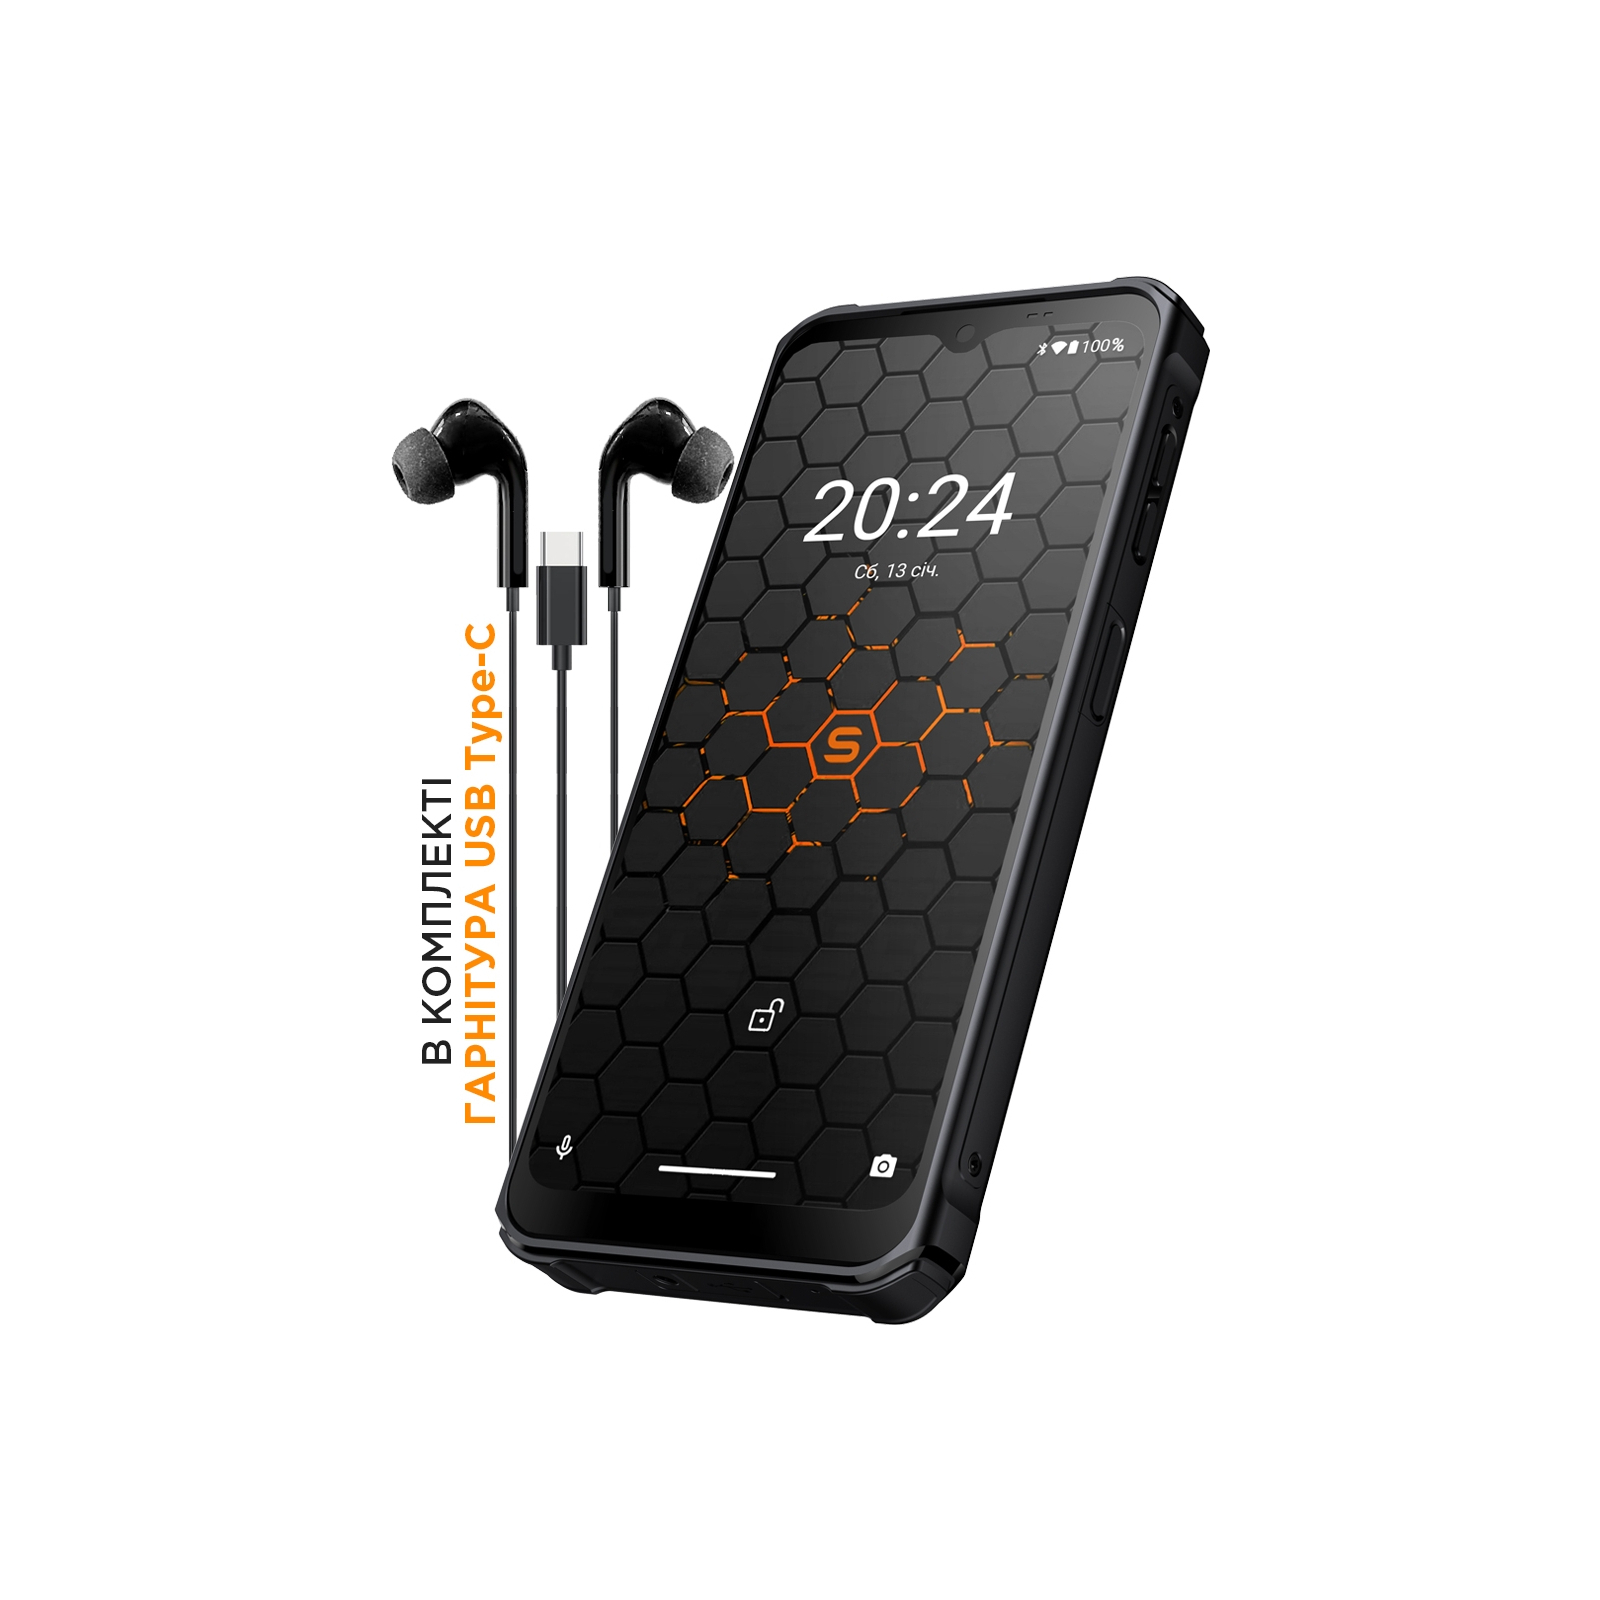 Мобильный телефон Sigma X-treme PQ56 Black Orange (4827798338025) изображение 5